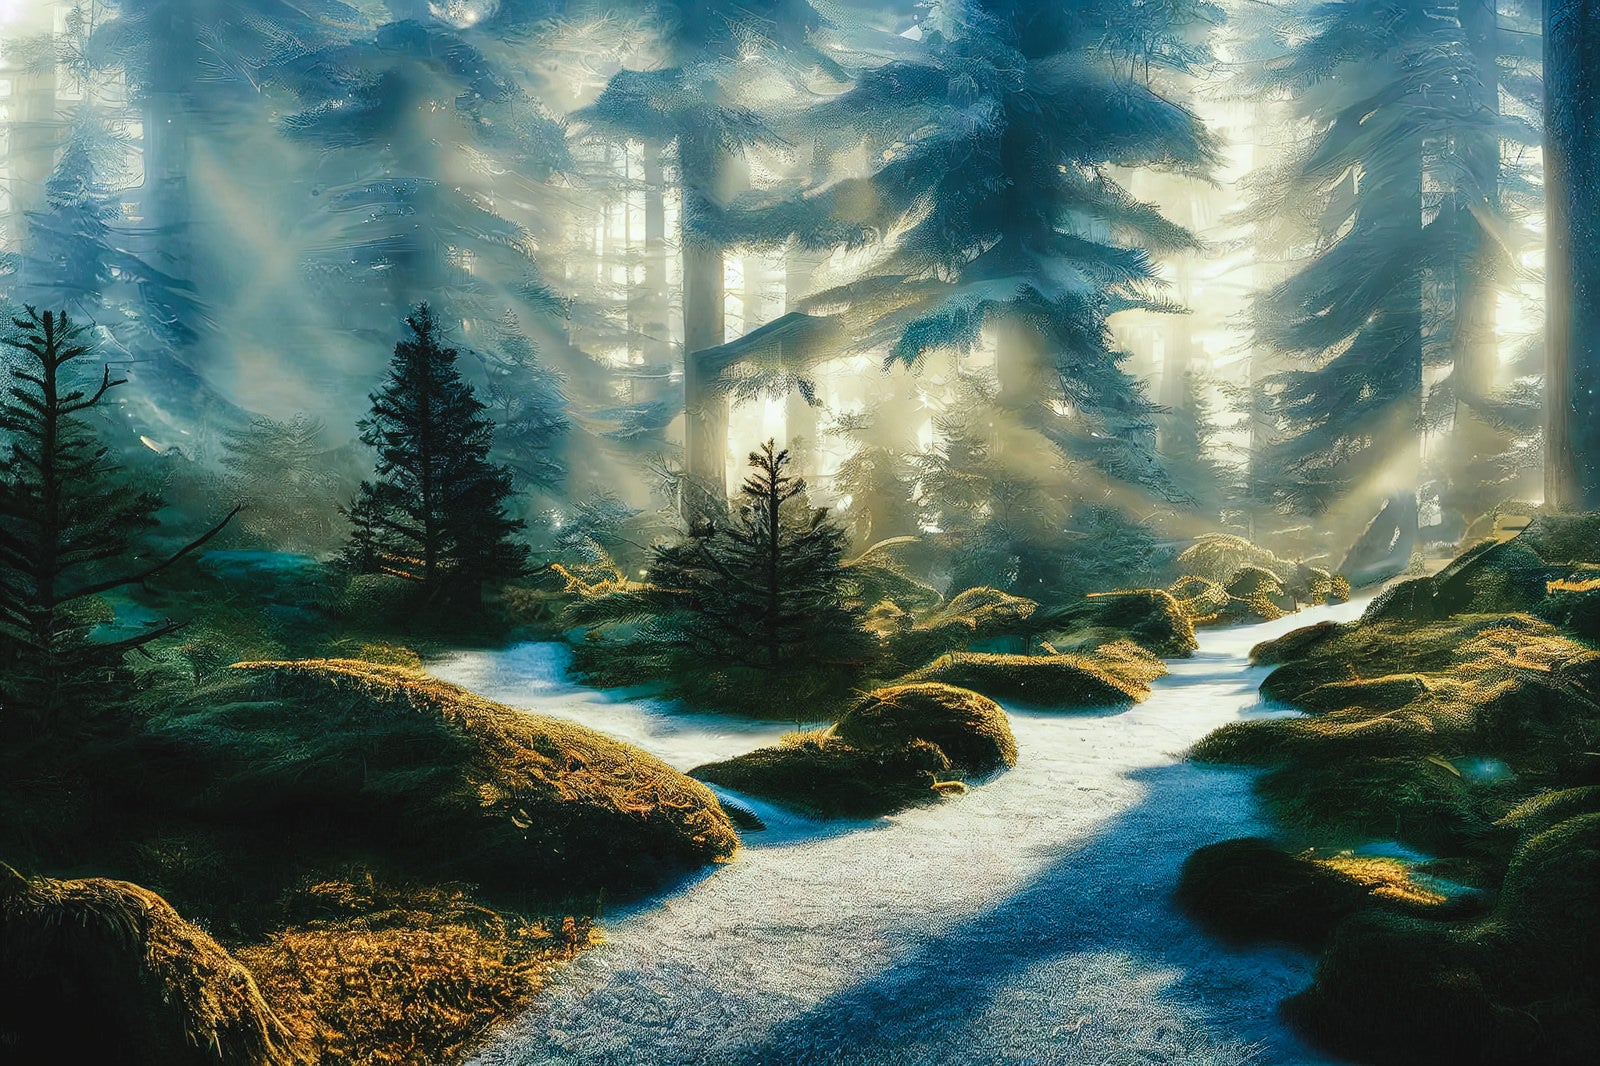 「朝靄の森と遊歩道」の写真